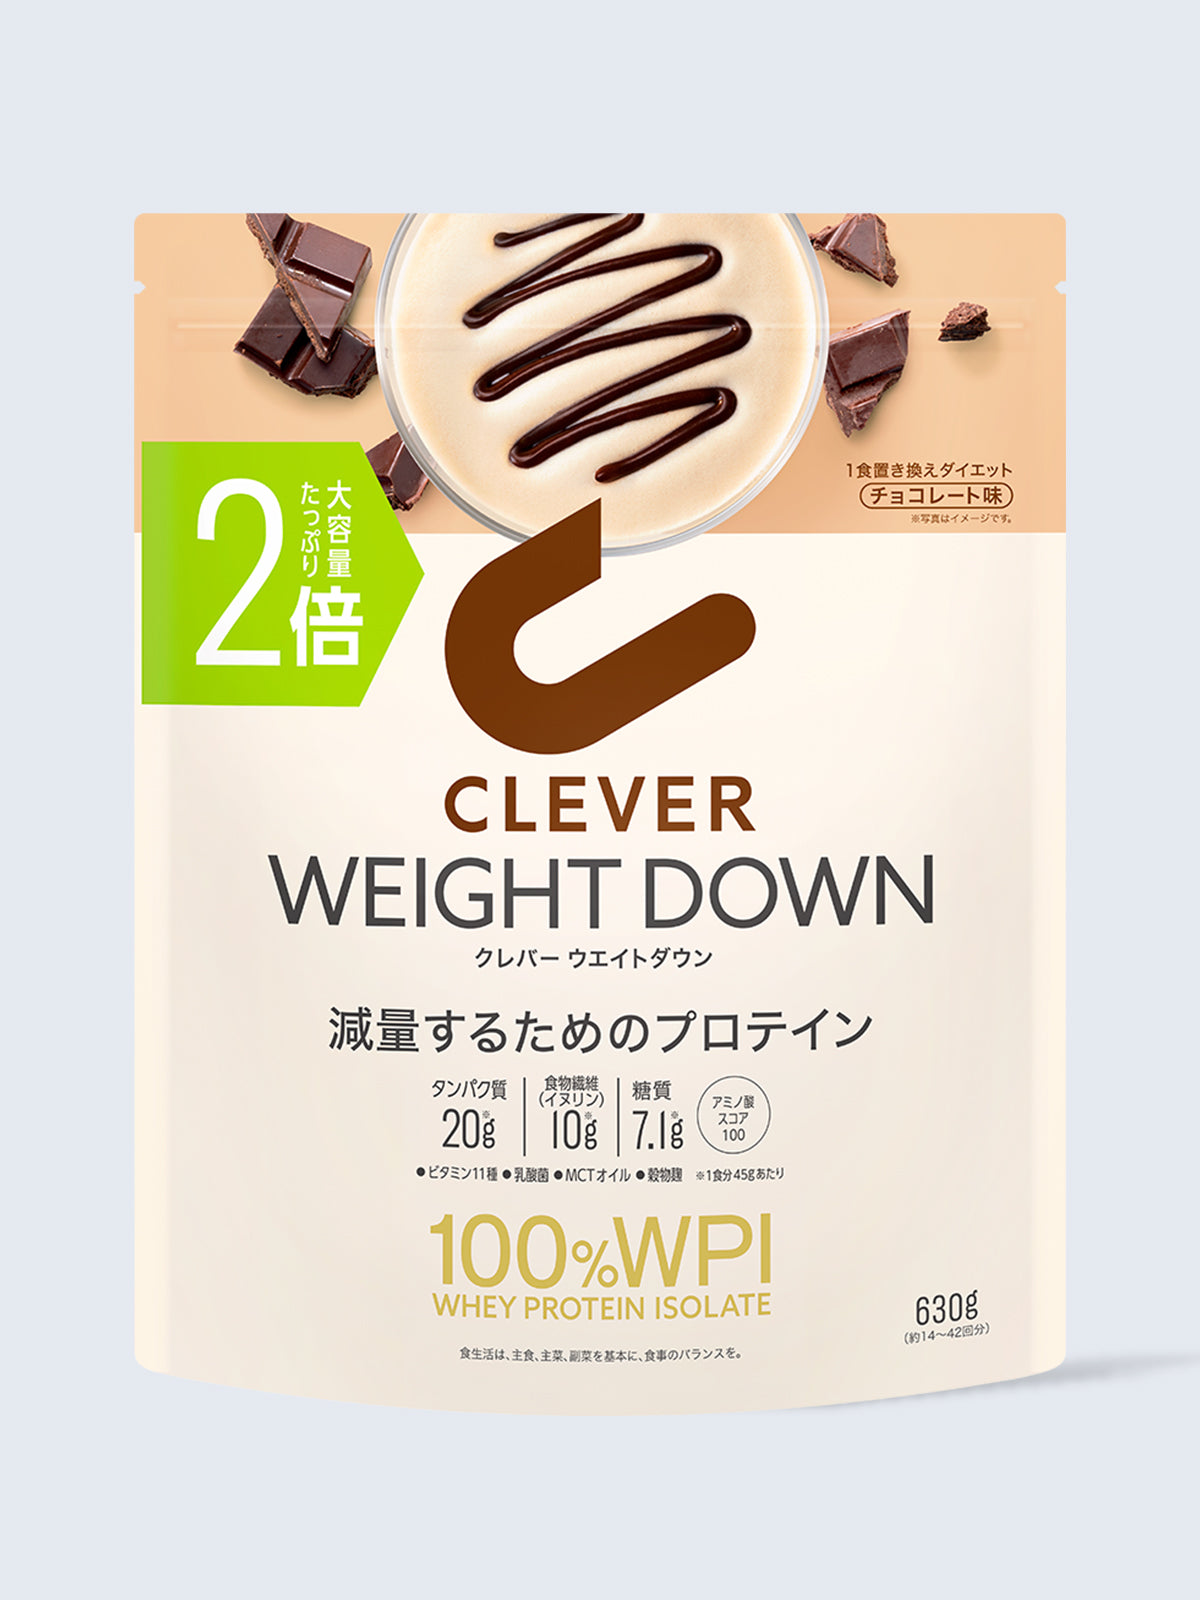 プロテイン [1食置き換えダイエット WPI100%] チョコレート味 クレバー